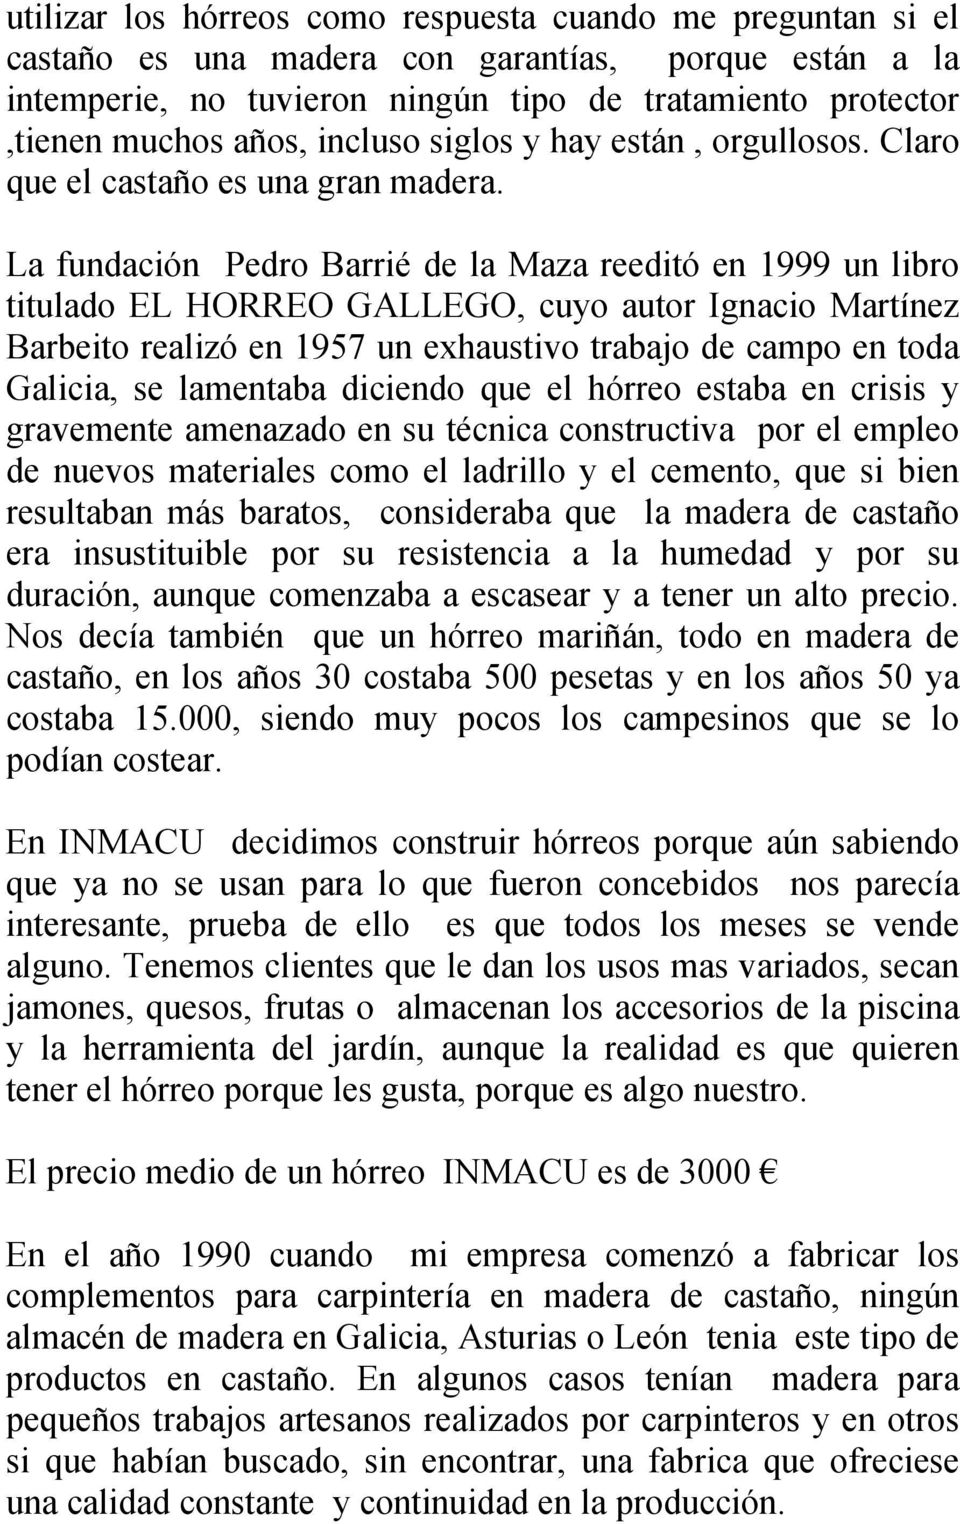 La fundación Pedro Barrié de la Maza reeditó en 1999 un libro titulado EL HORREO GALLEGO, cuyo autor Ignacio Martínez Barbeito realizó en 1957 un exhaustivo trabajo de campo en toda Galicia, se